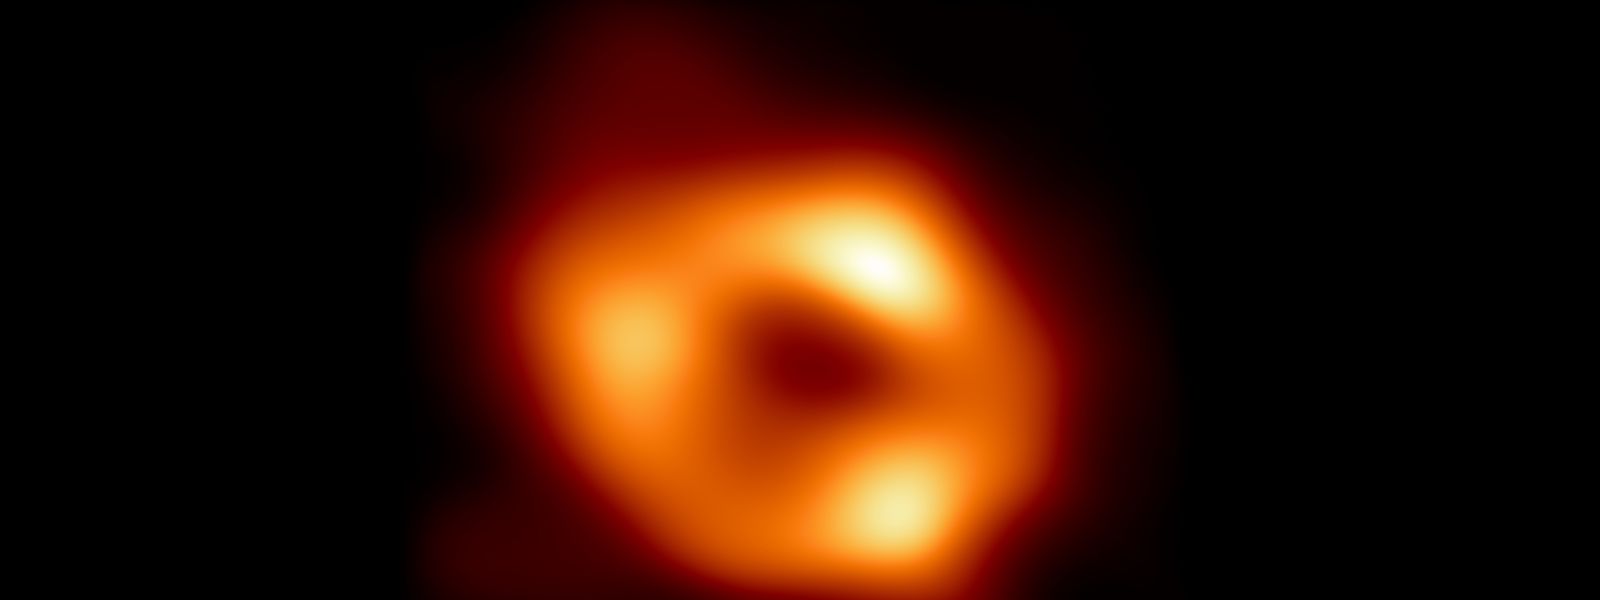 Dies ist das erste Bild von Sagittarius A*, dem Schwarzen Loch im Zentrum unserer Galaxie.